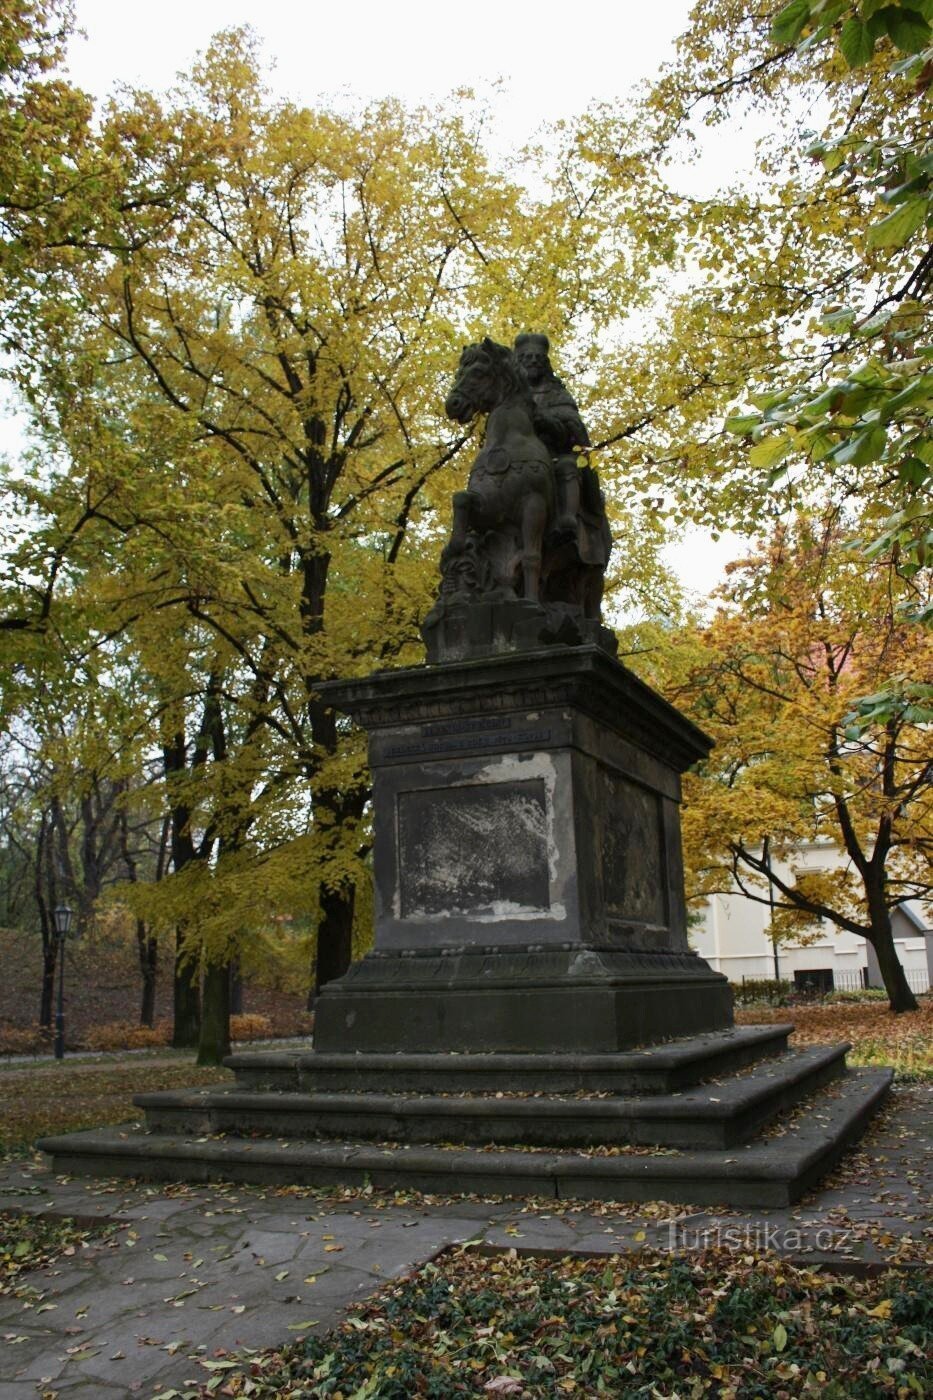 Prague - Monument équestre de St. Venceslas à Vyšehrad